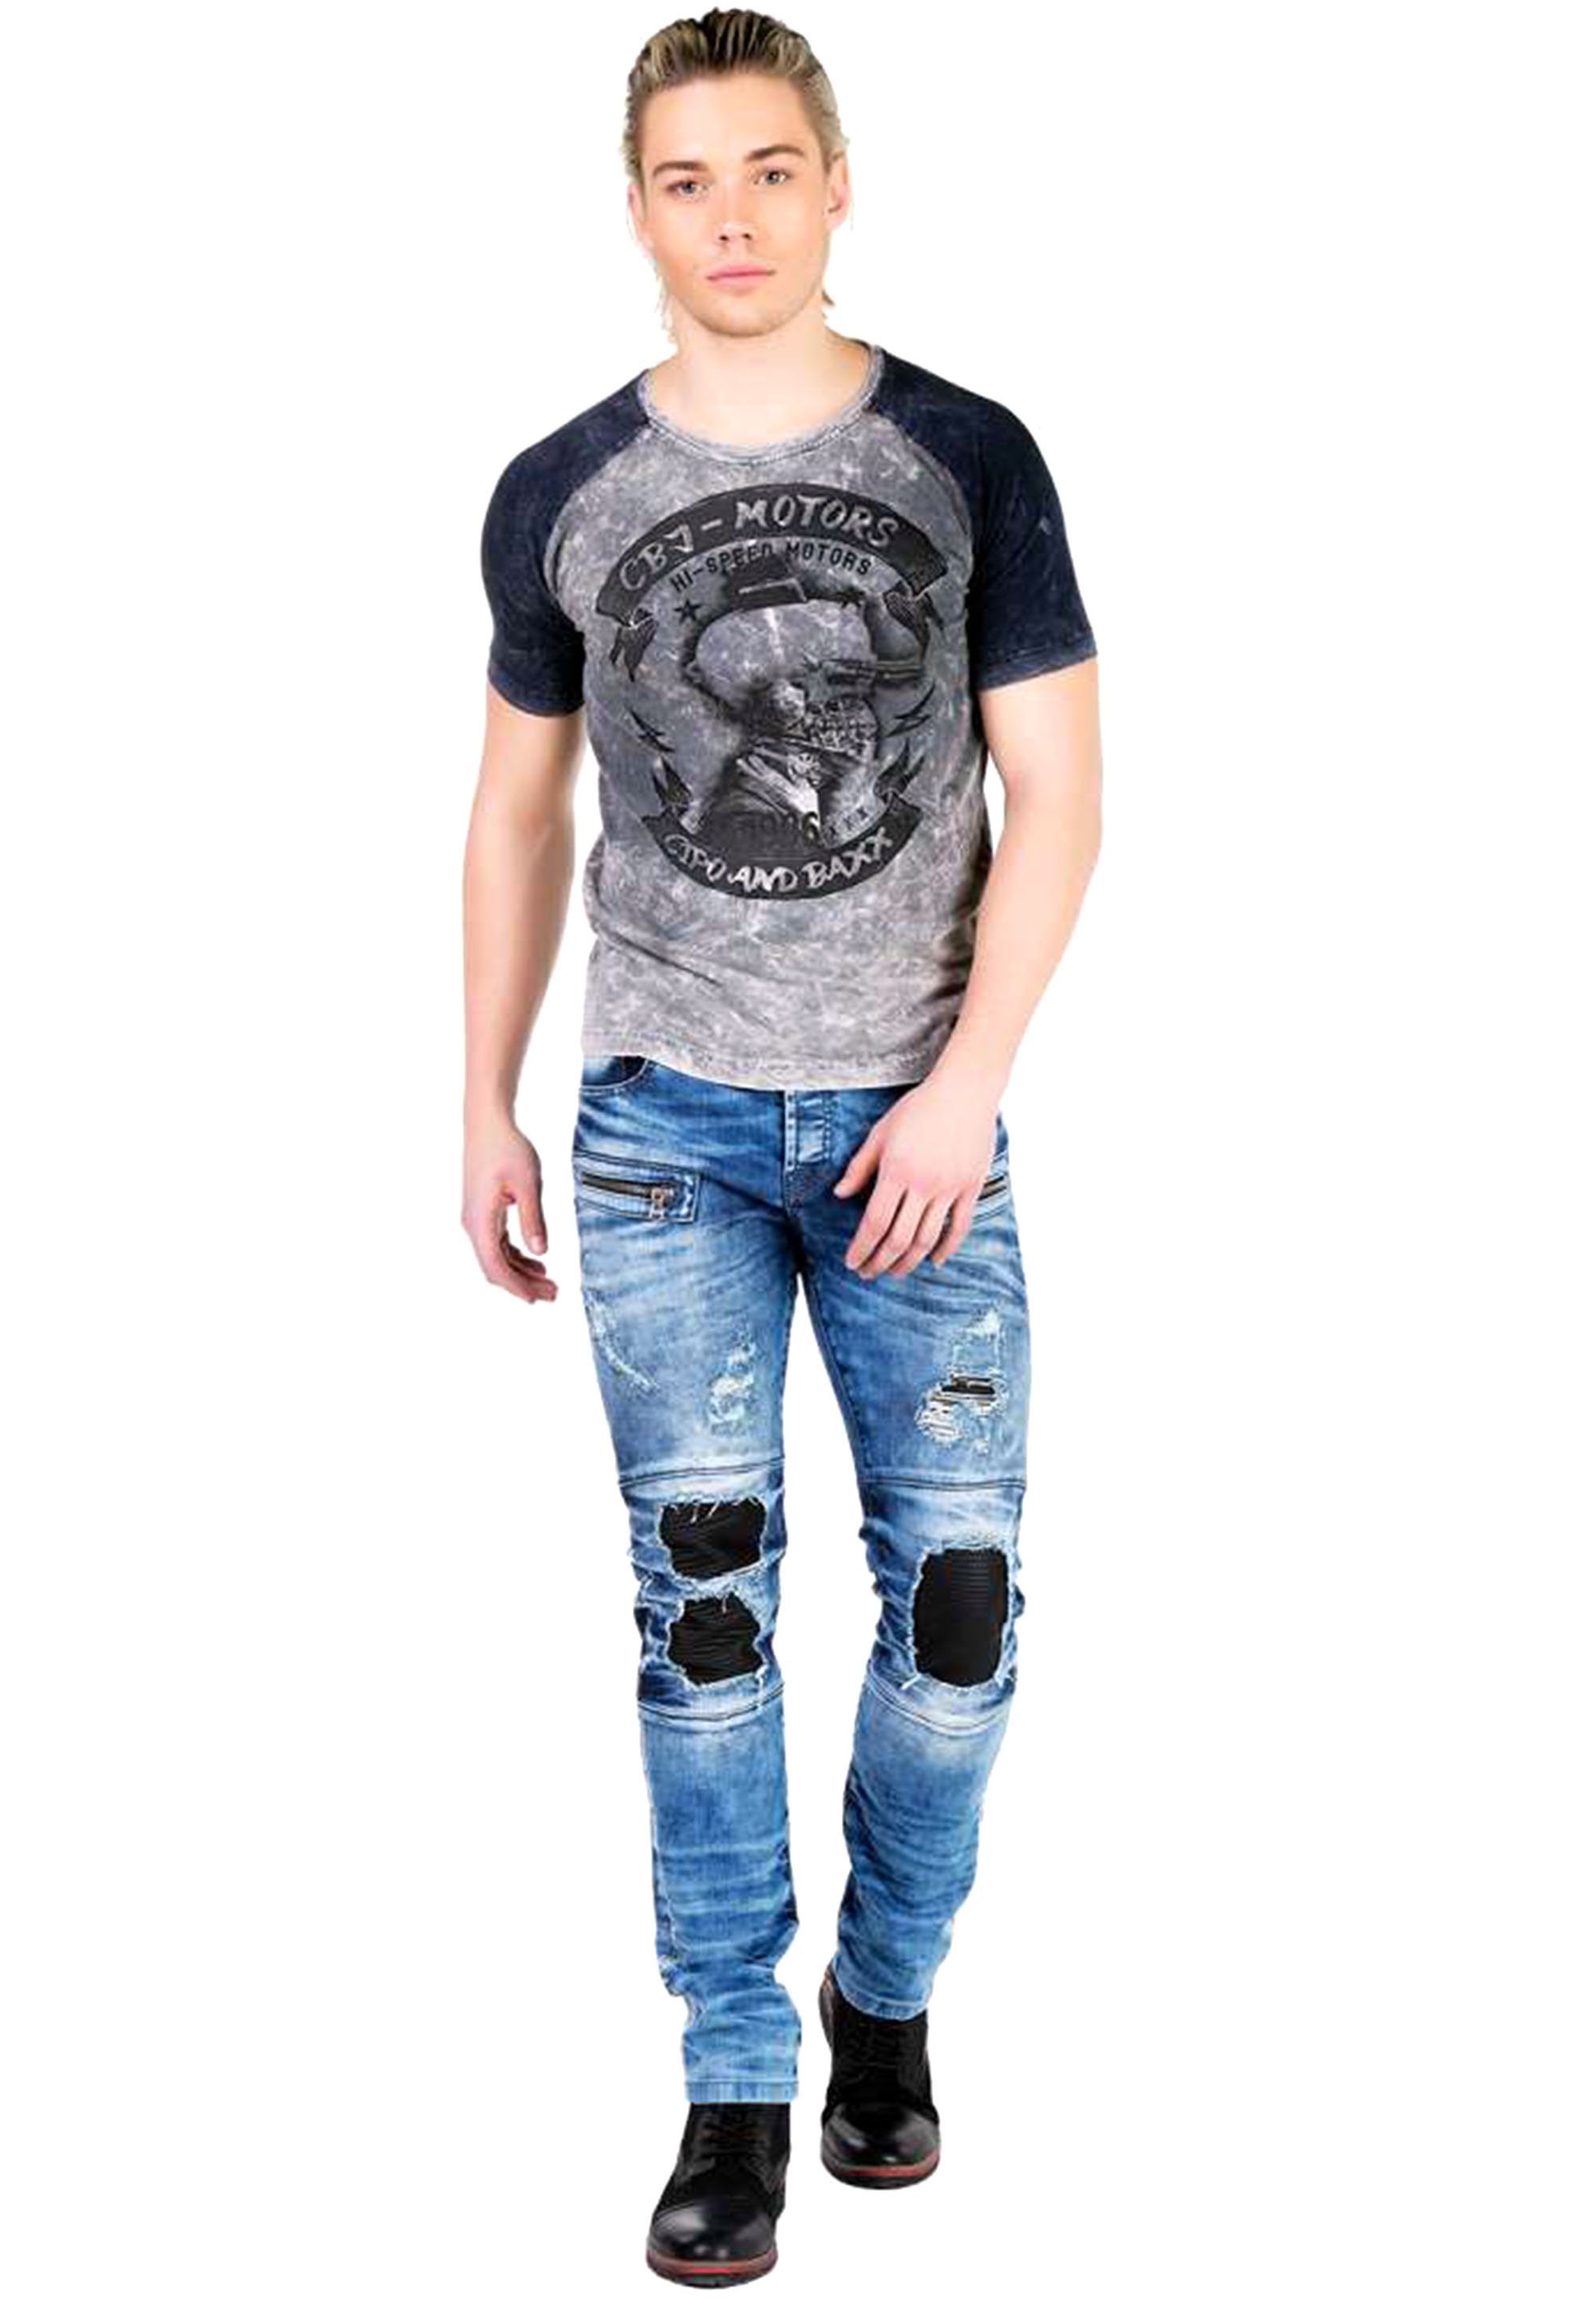 Rückenprint und Cipo T-Shirt Front- Baxx & coolem mit